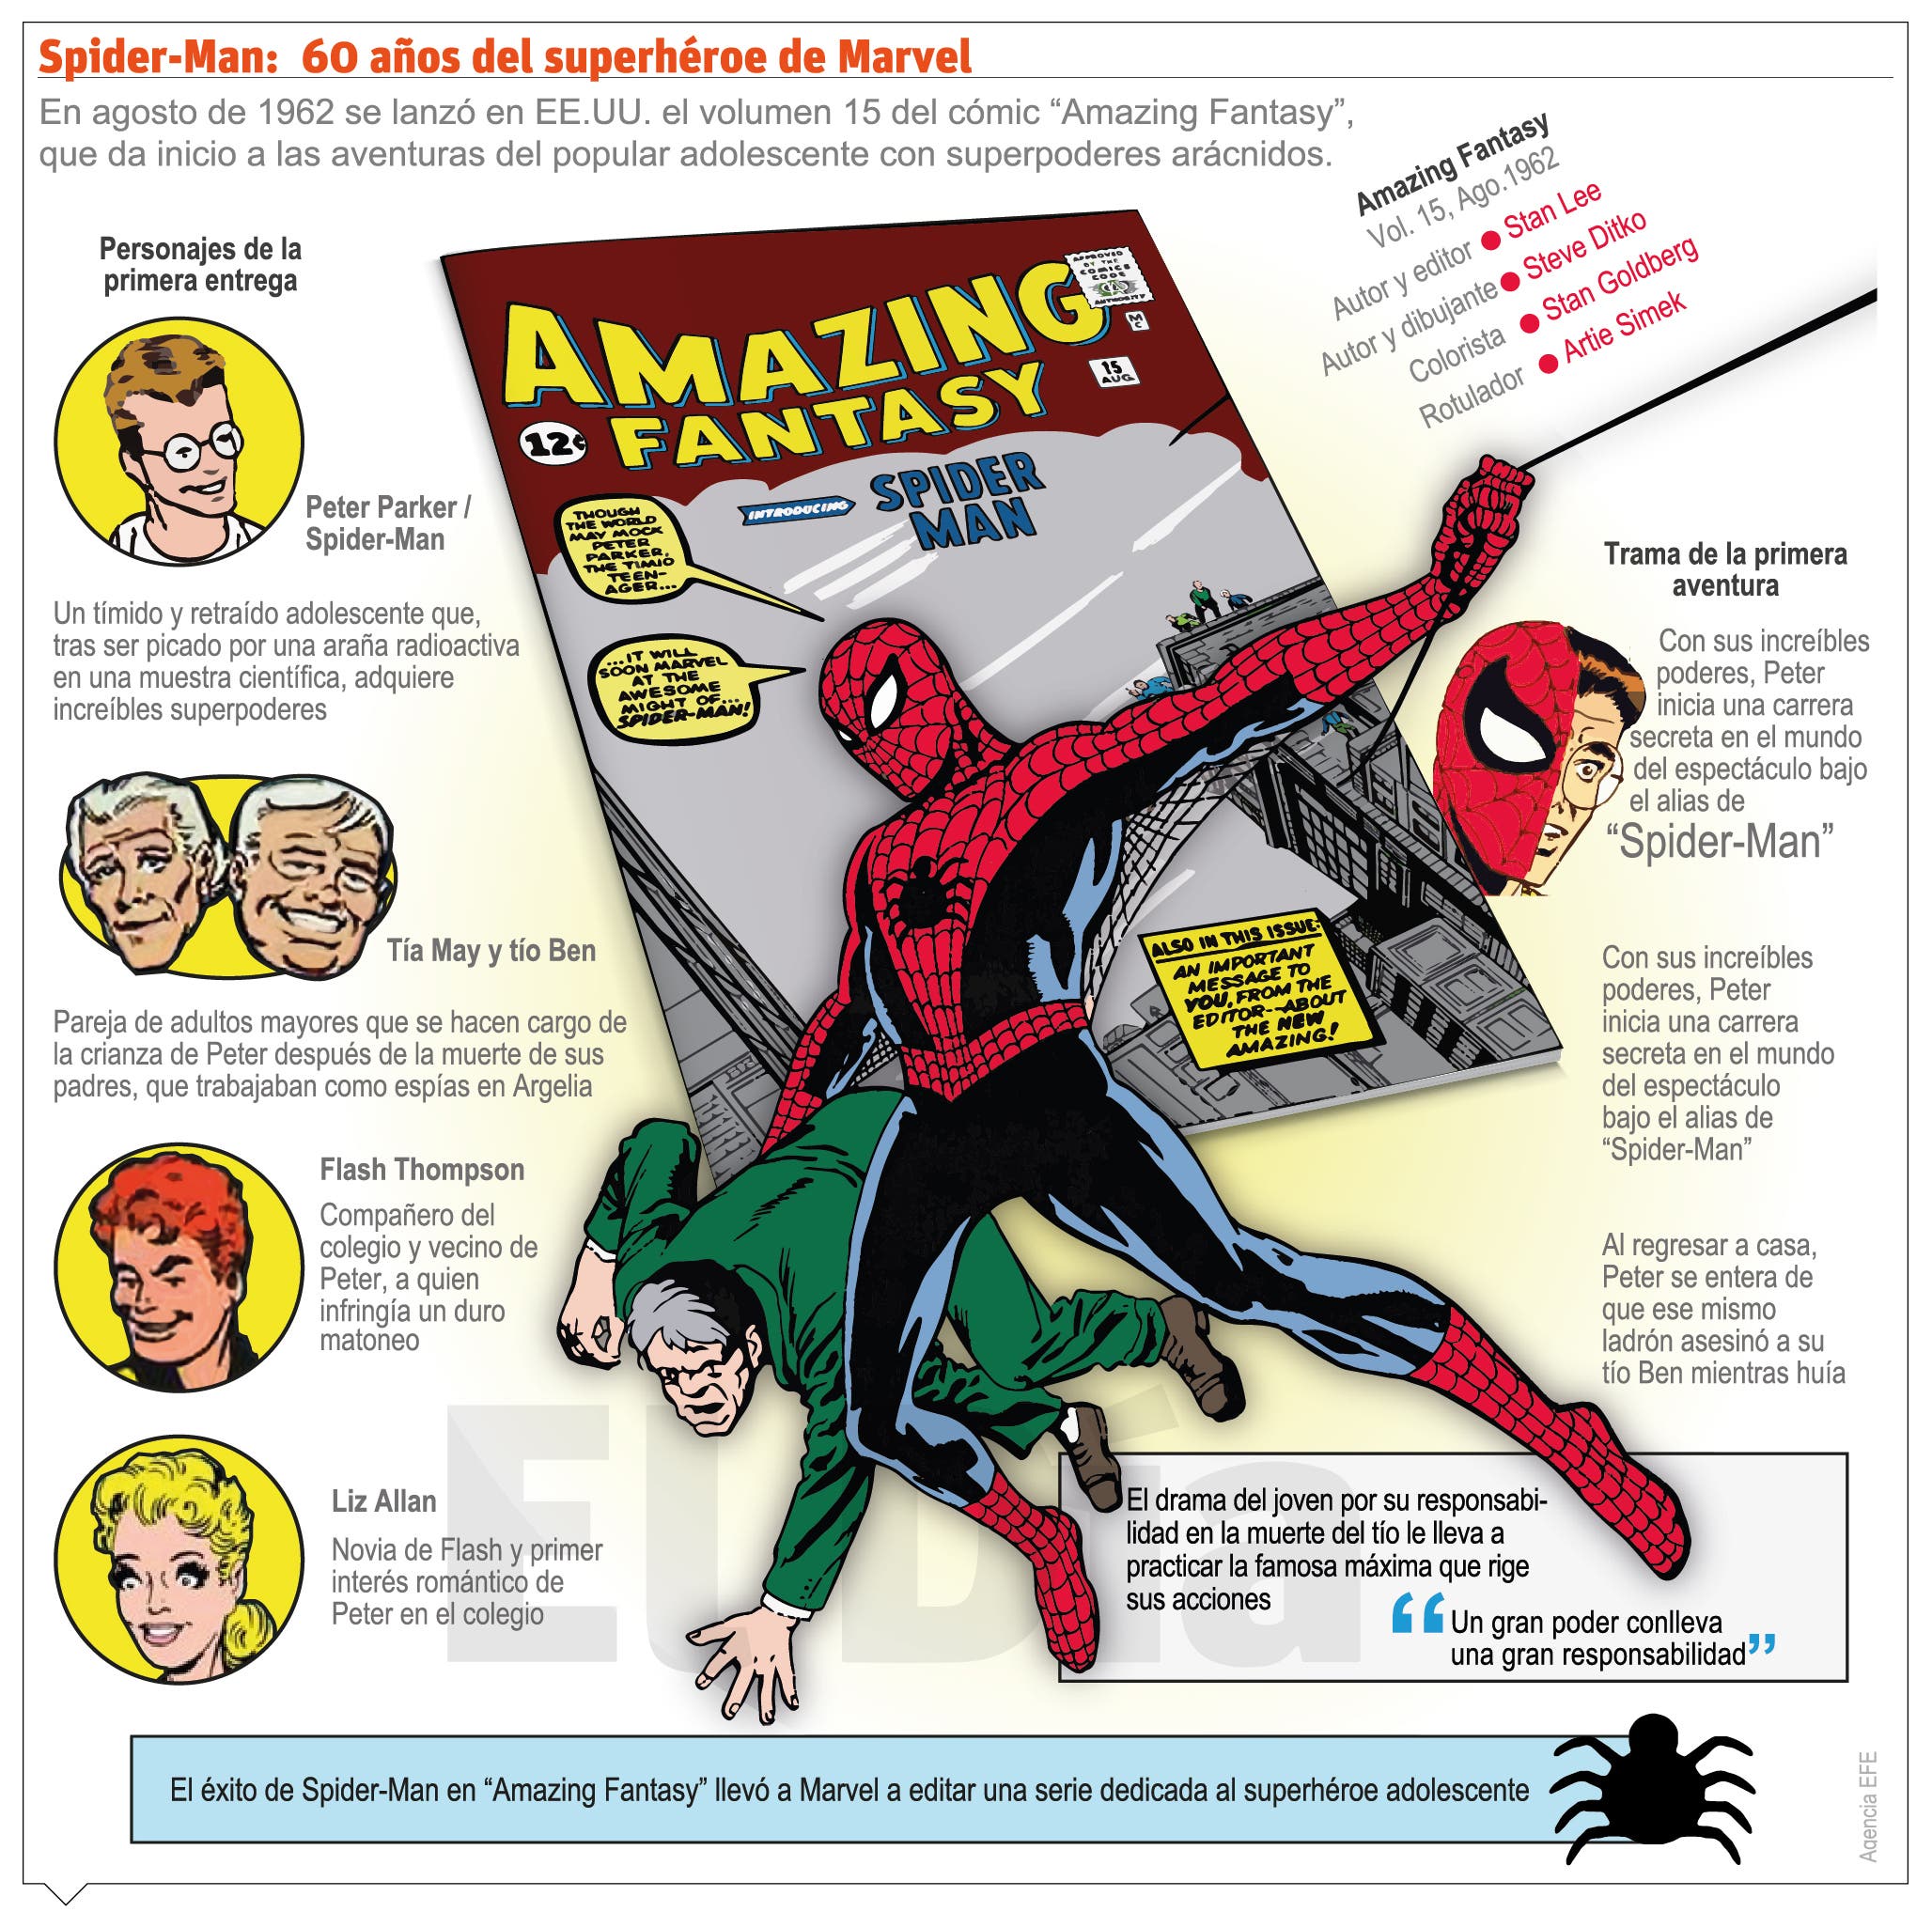 Luego de 60 años,  Spiderman continúa siendo muy valorado